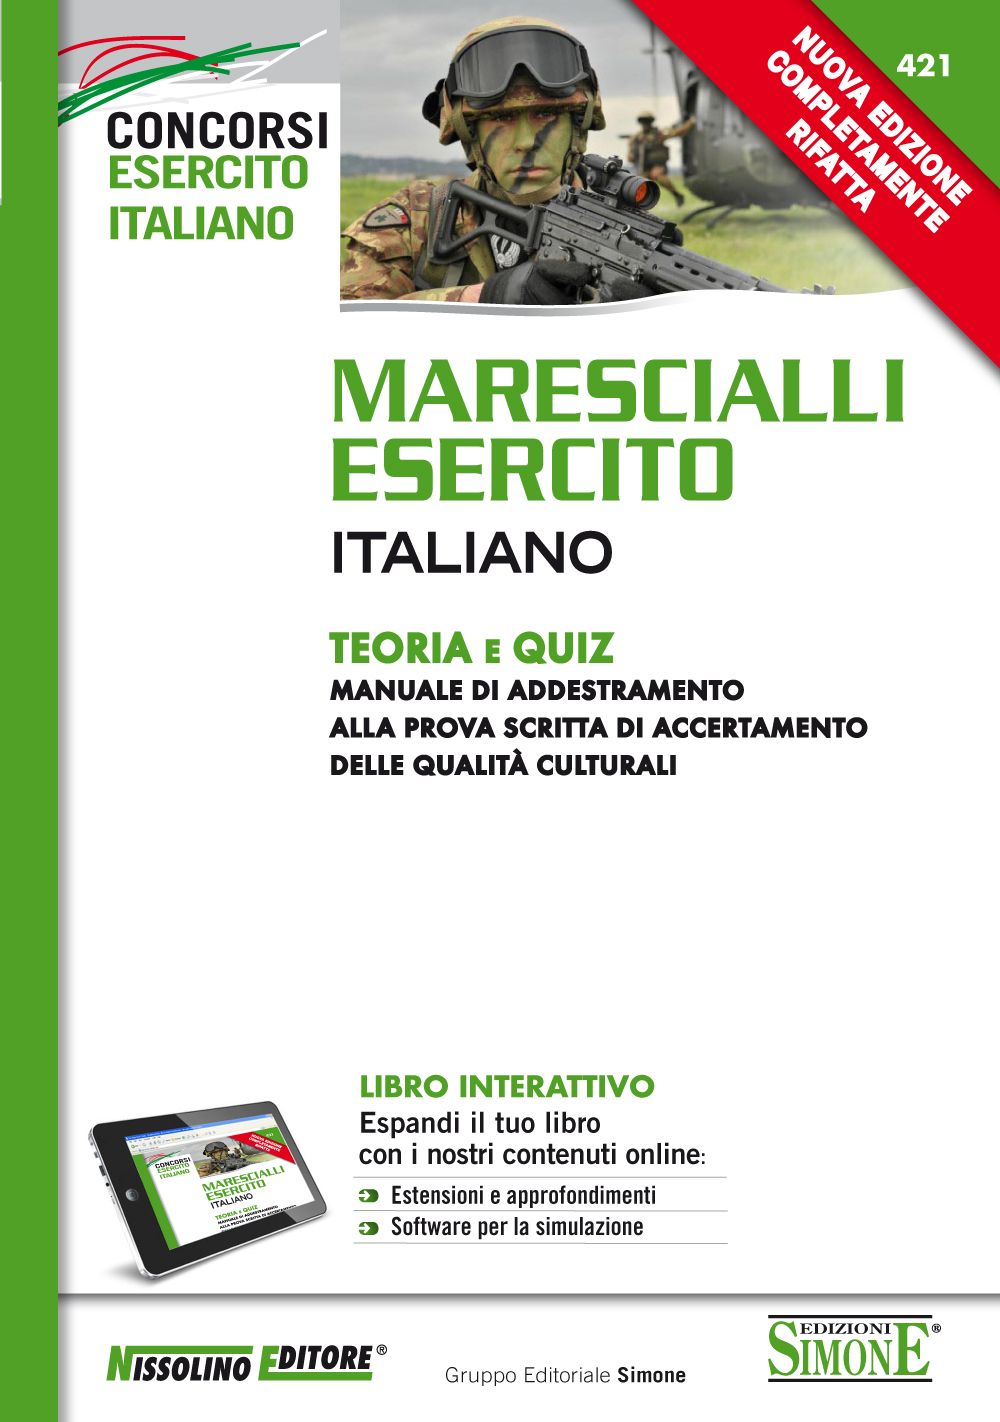 Marescialli Esercito Italiano - Teoria e Quiz - NE/421